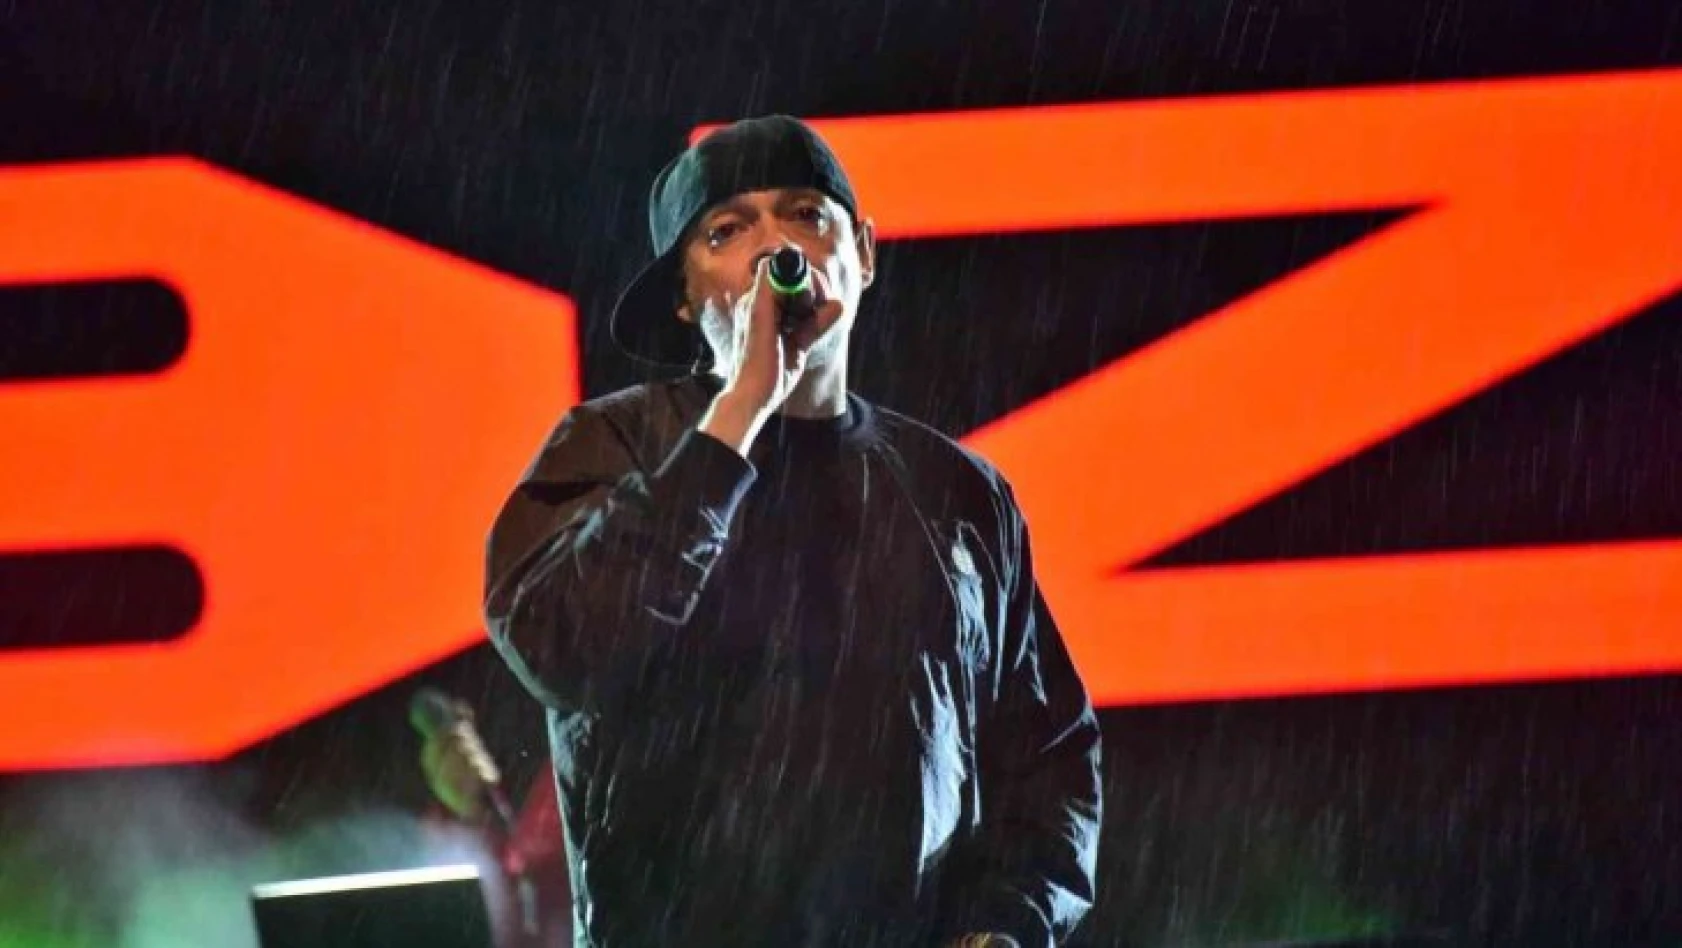 Binlerce kişi yağmura aldırış etmeden Ceza konserini dinledi